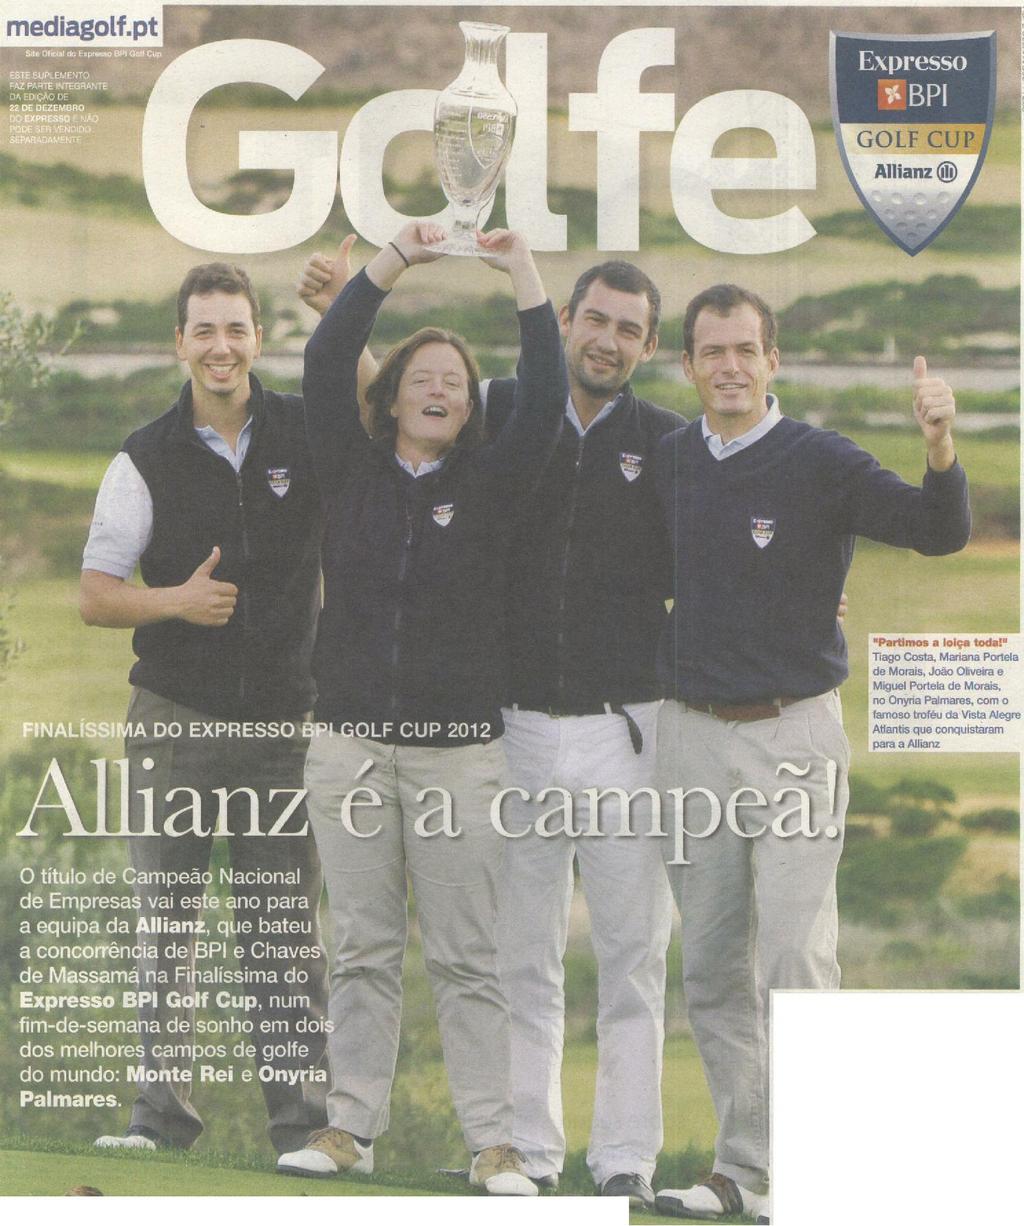 Equipa da Allianz ganha no Algarve - PDF Free Download